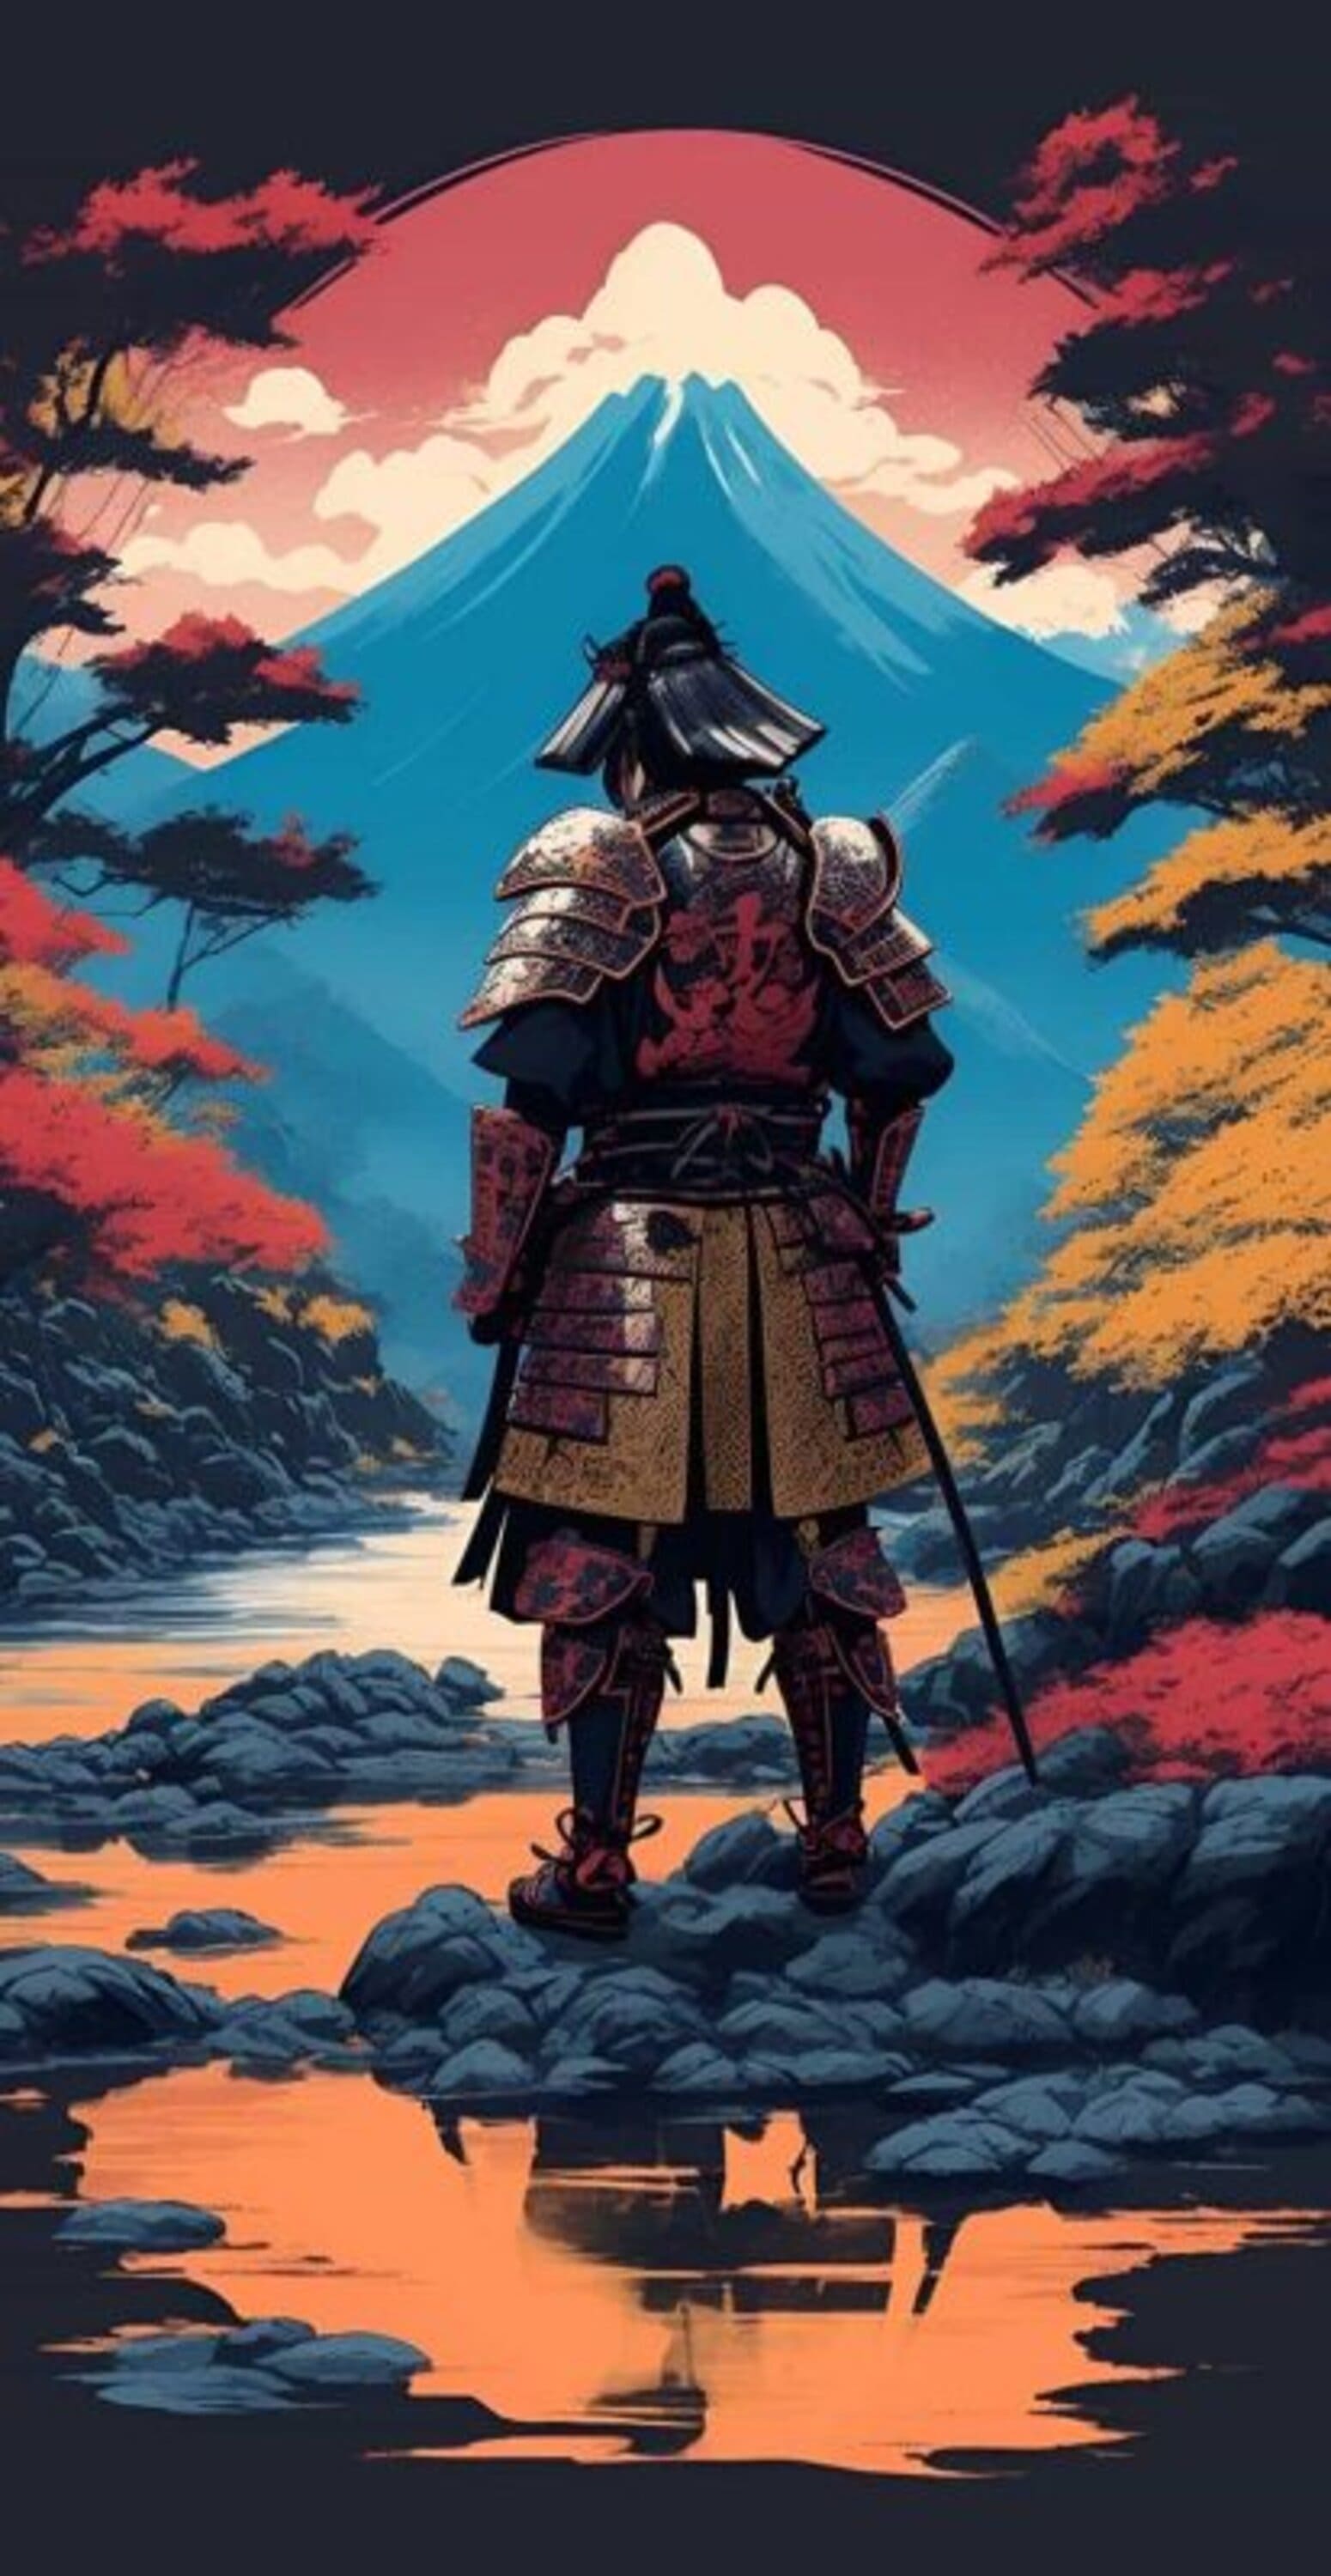 خلفية ساموراي الياباني بجودة 4K، خلفيات ساموراي فخمه